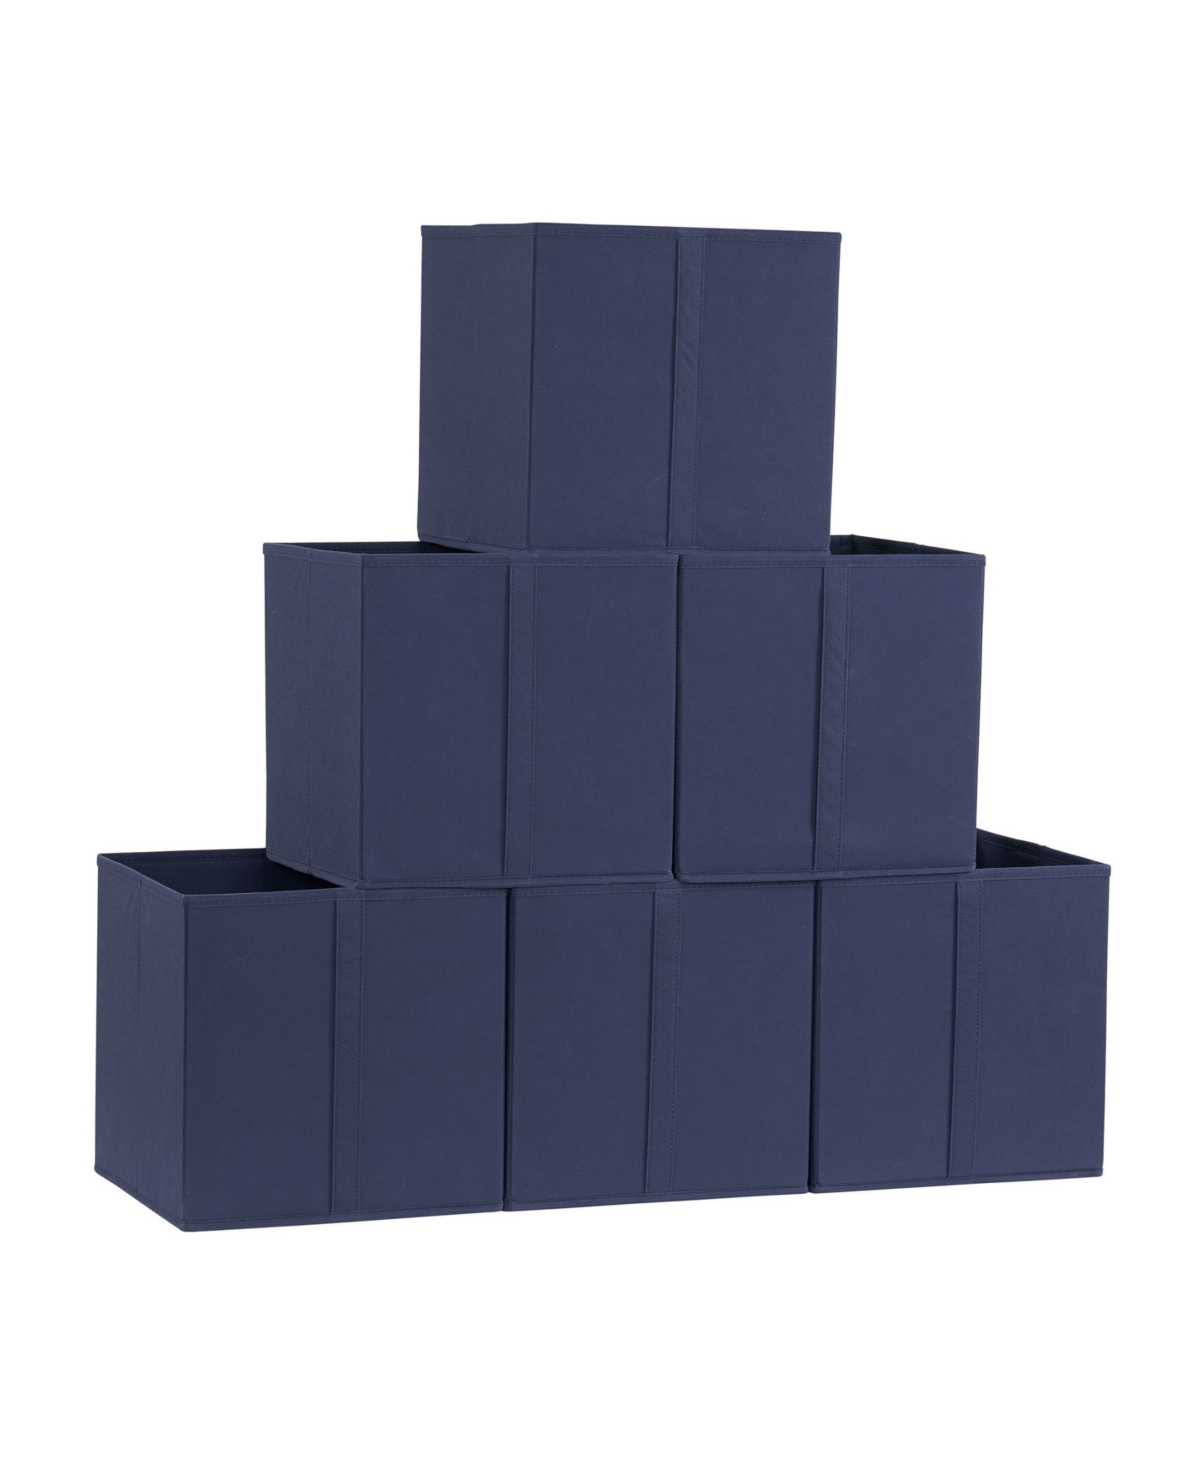 Household Essentials 6 Piece Bin Set, Navy Vertical Pull In Blue